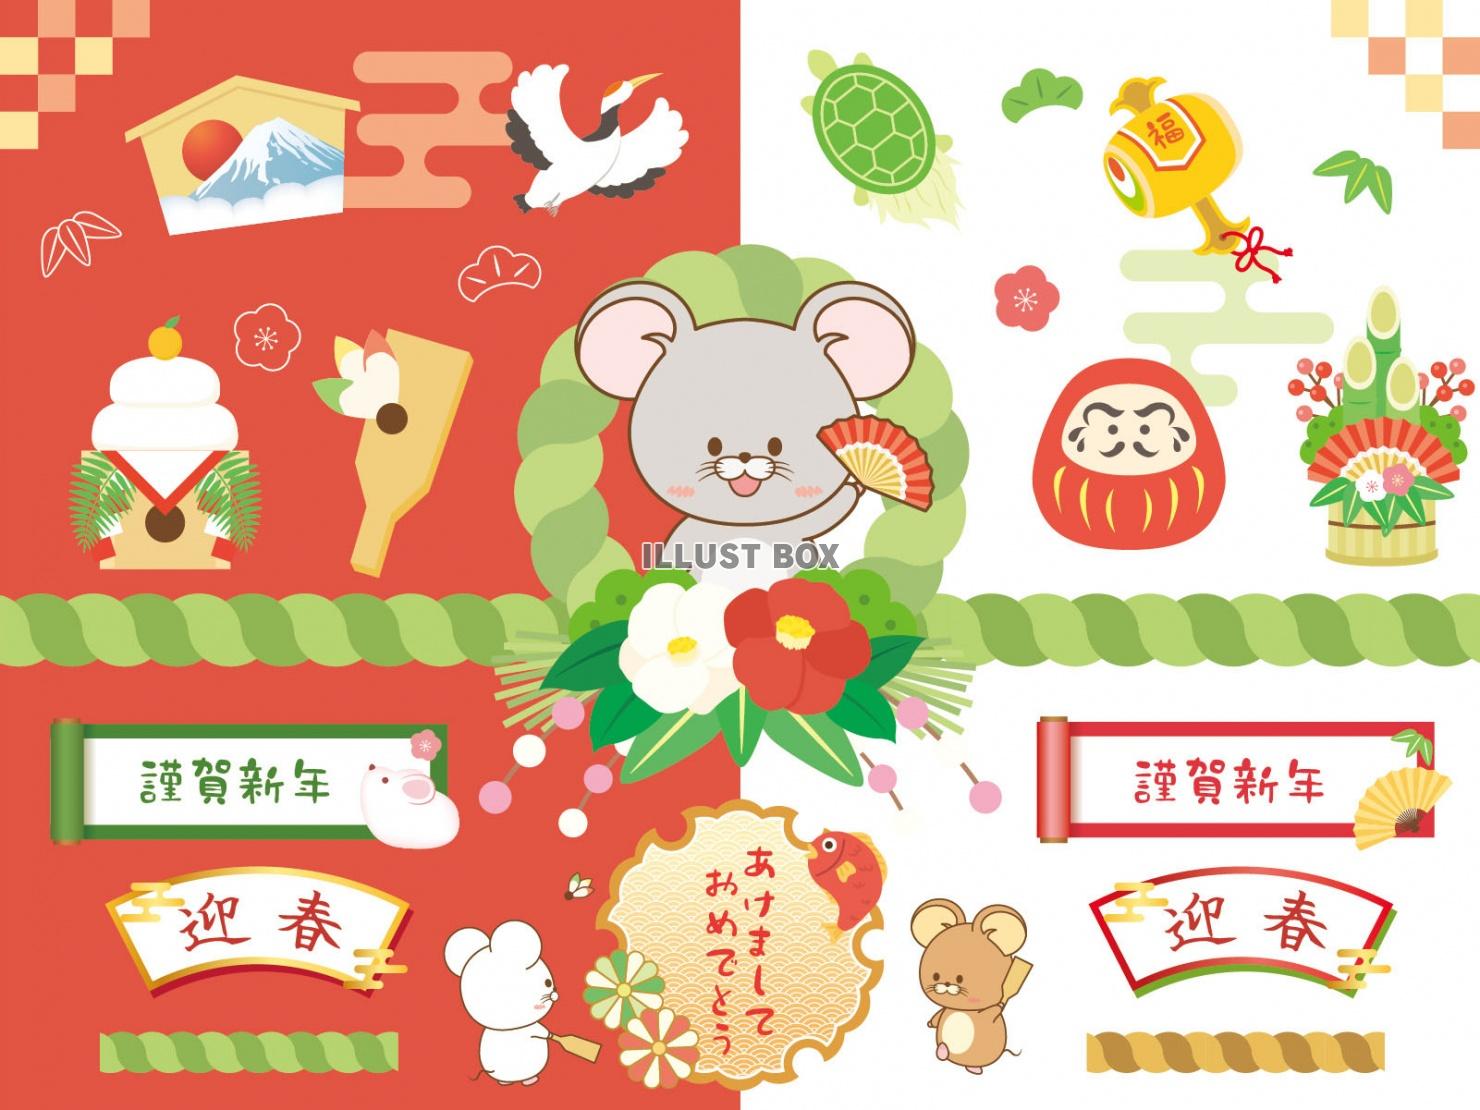 子年幸せの正月セット(干支飾り、ネズミ、鶴、亀、松竹梅、だる...